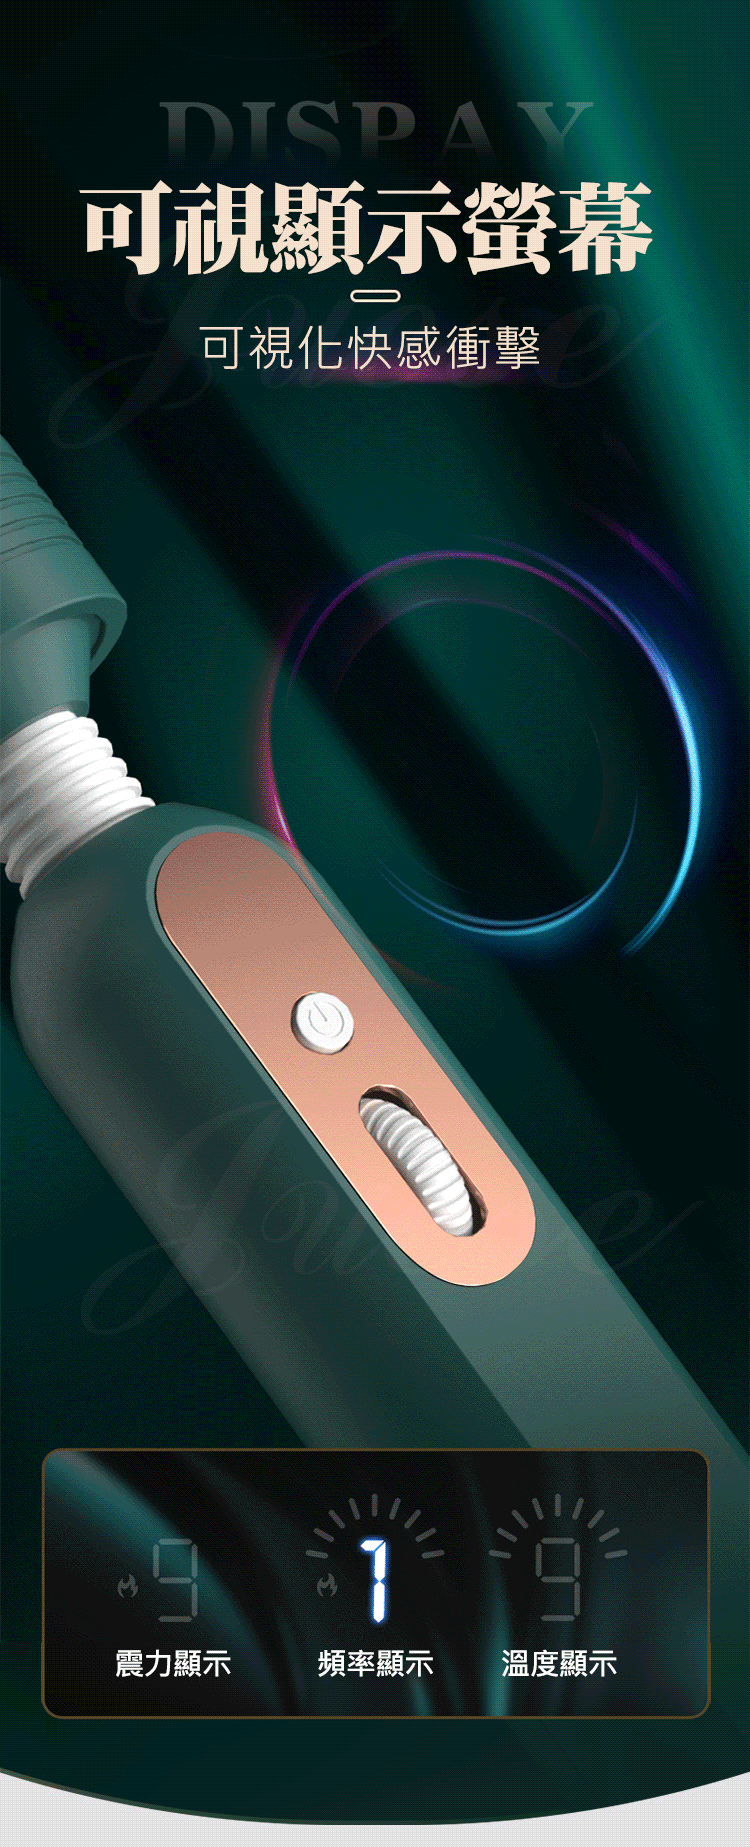 歐羅 9段變頻+無極變速液晶顯示加溫AV女優按摩棒-綠(特)